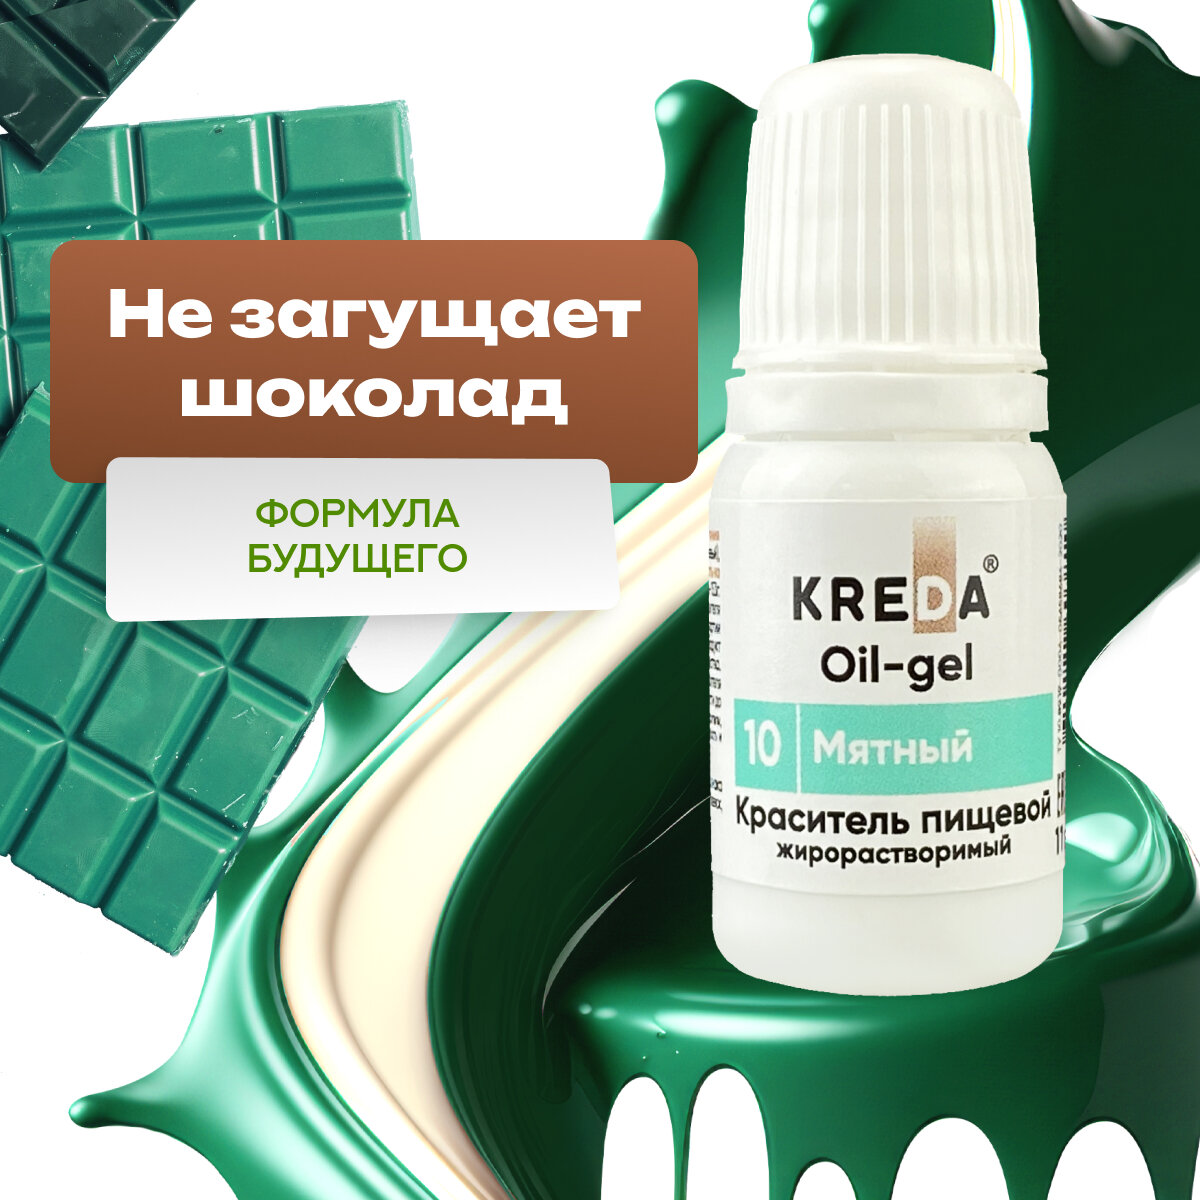 Краситель гелевый пищевой жирорастворимый Oil-gel KREDA мятный №10, 10 мл